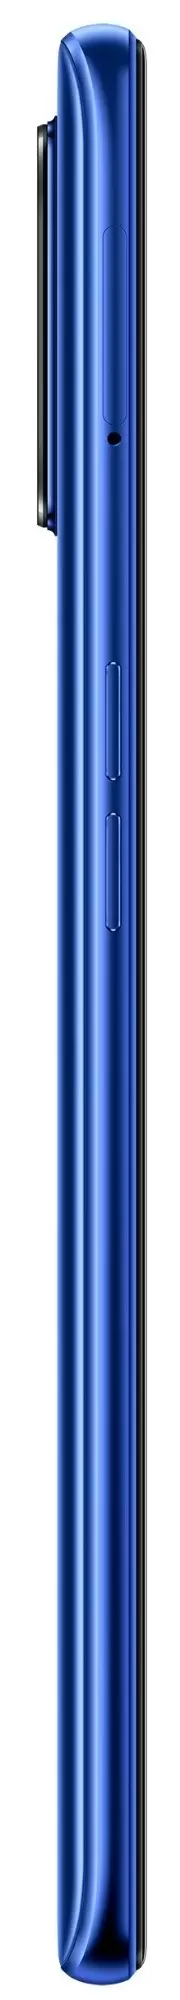 Смартфон Realme 7 Pro 8GB/128GB, синий